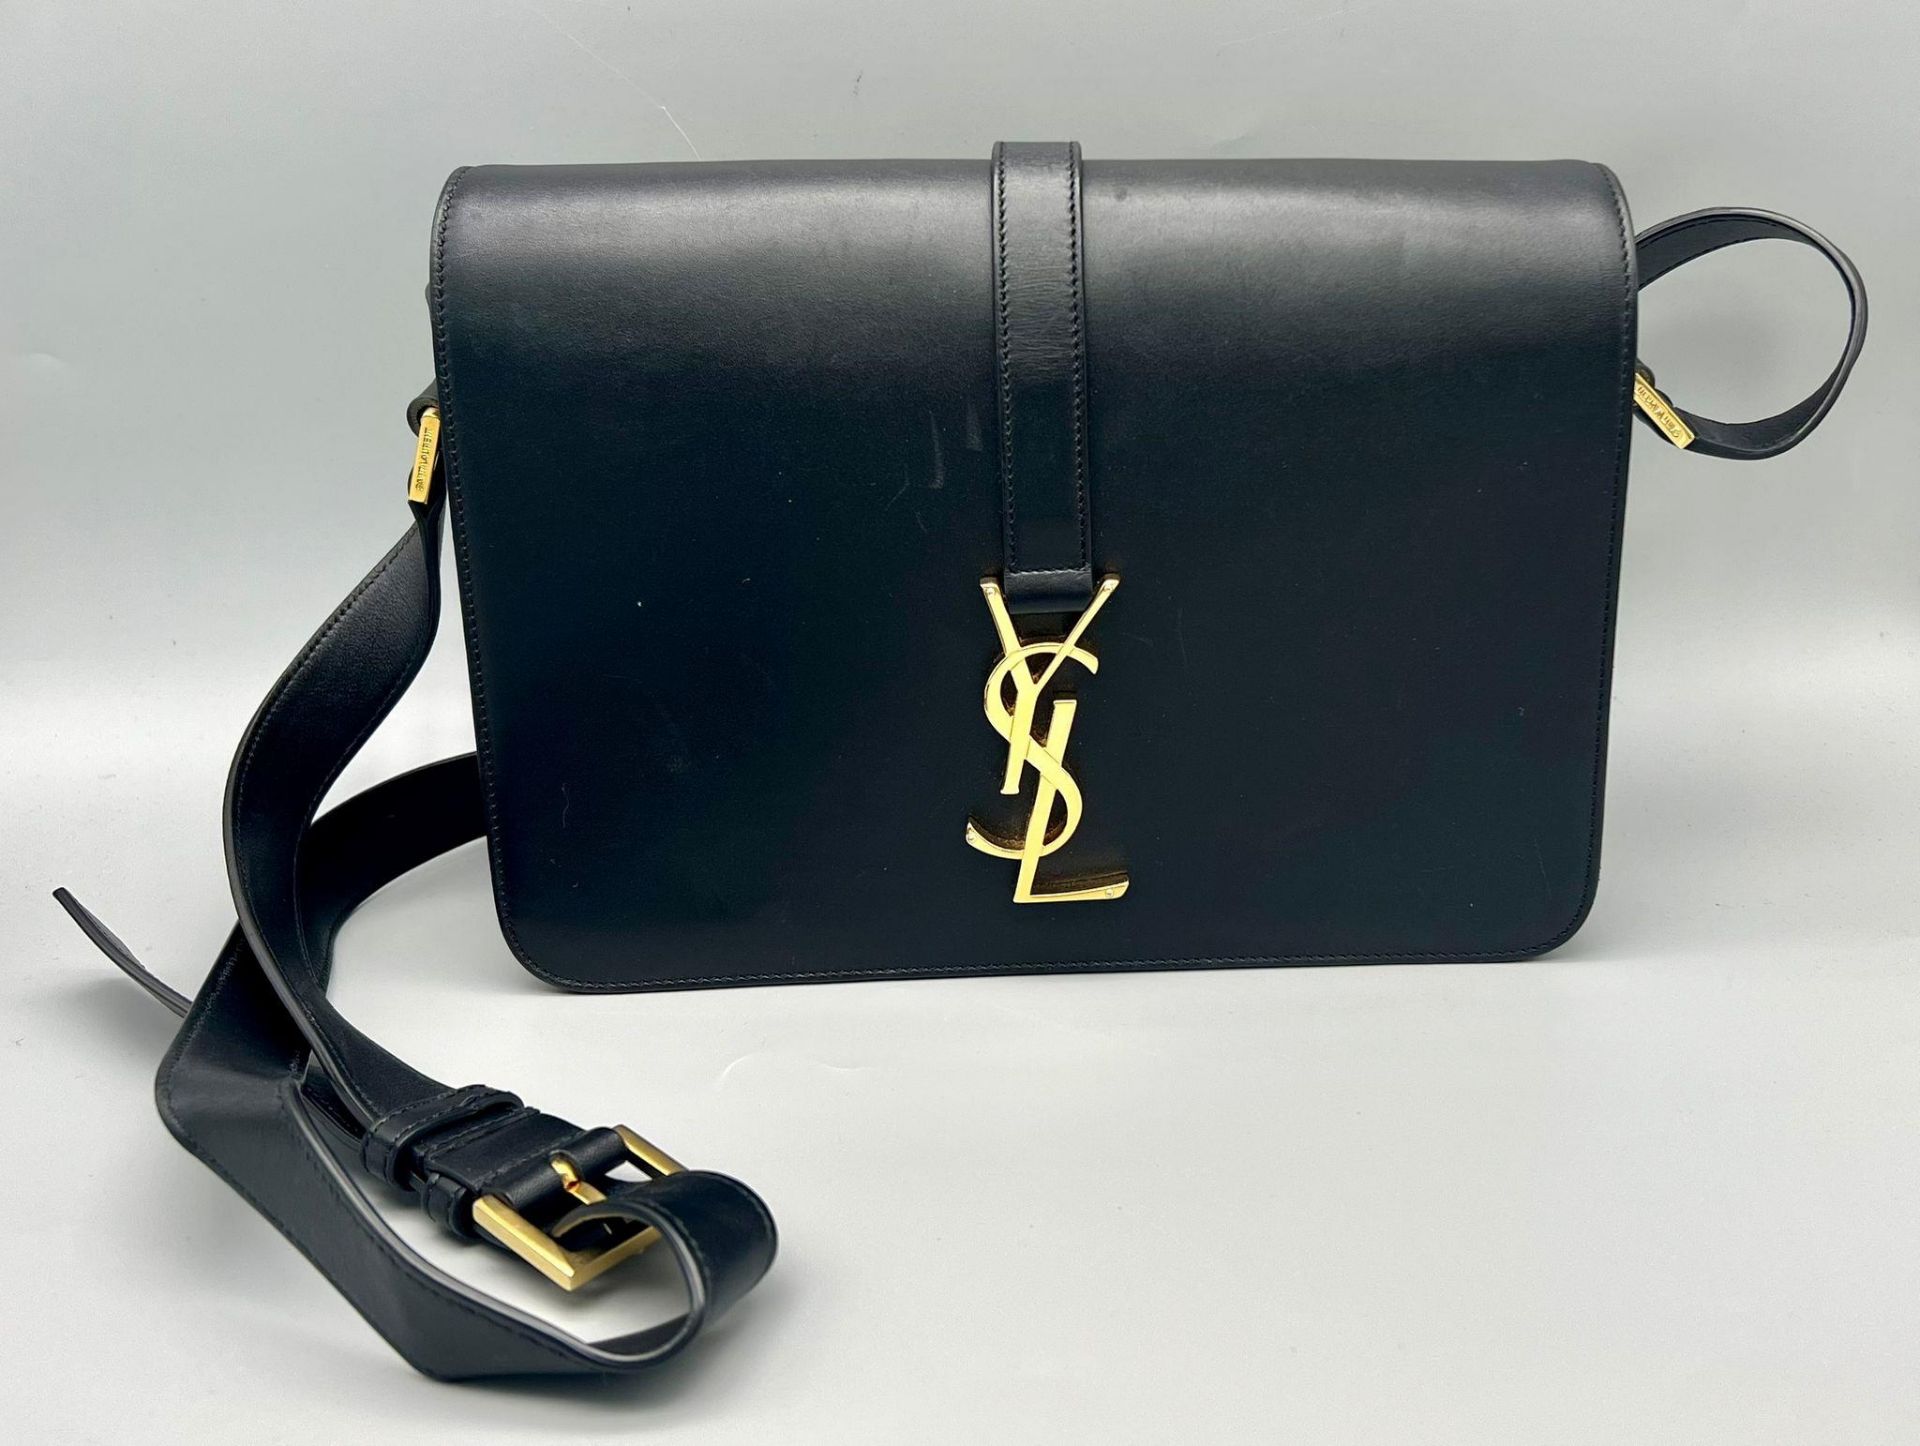 A Yves Saint Laurent (YSL) Black Leather Shoulder/Cross-body Bag. Adjustable shoulder strap. Gold-